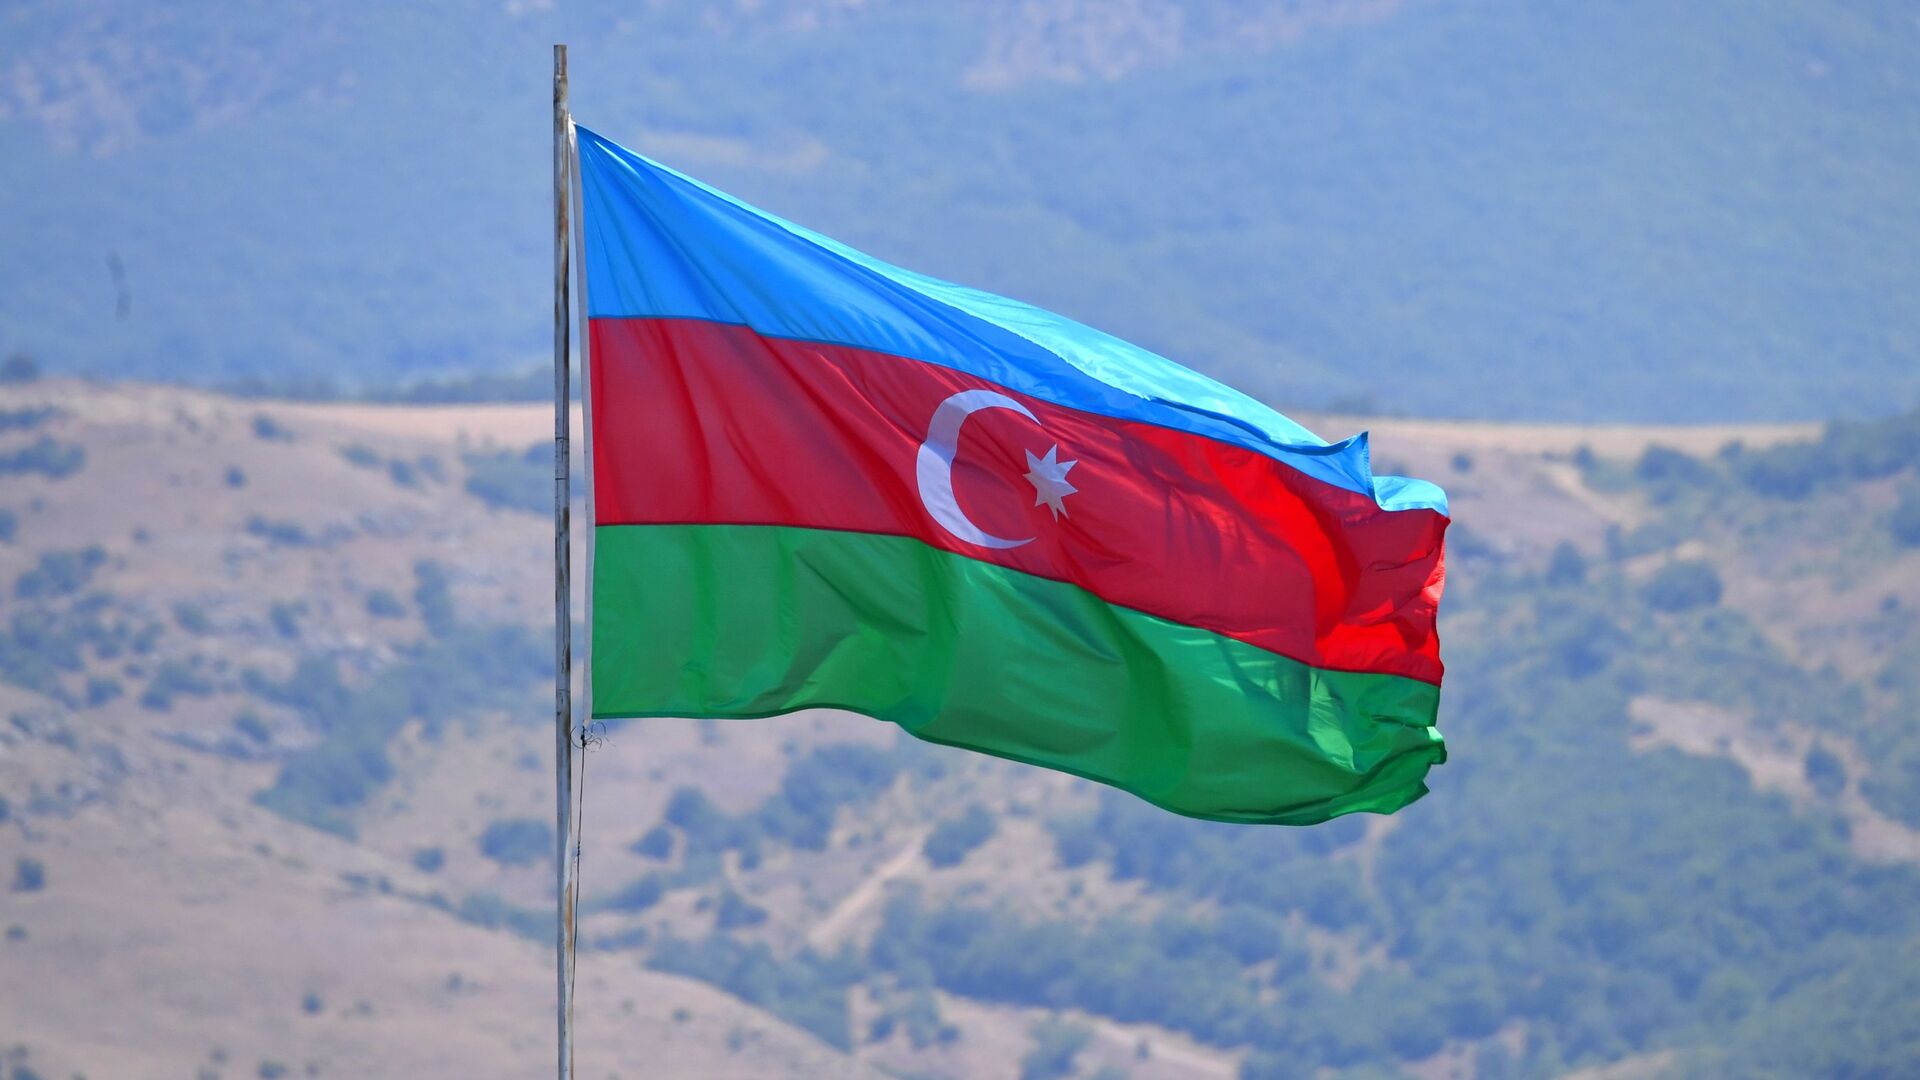 Флаг Азербайджана, фото из архива - Sputnik Азербайджан, 1920, 09.11.2021